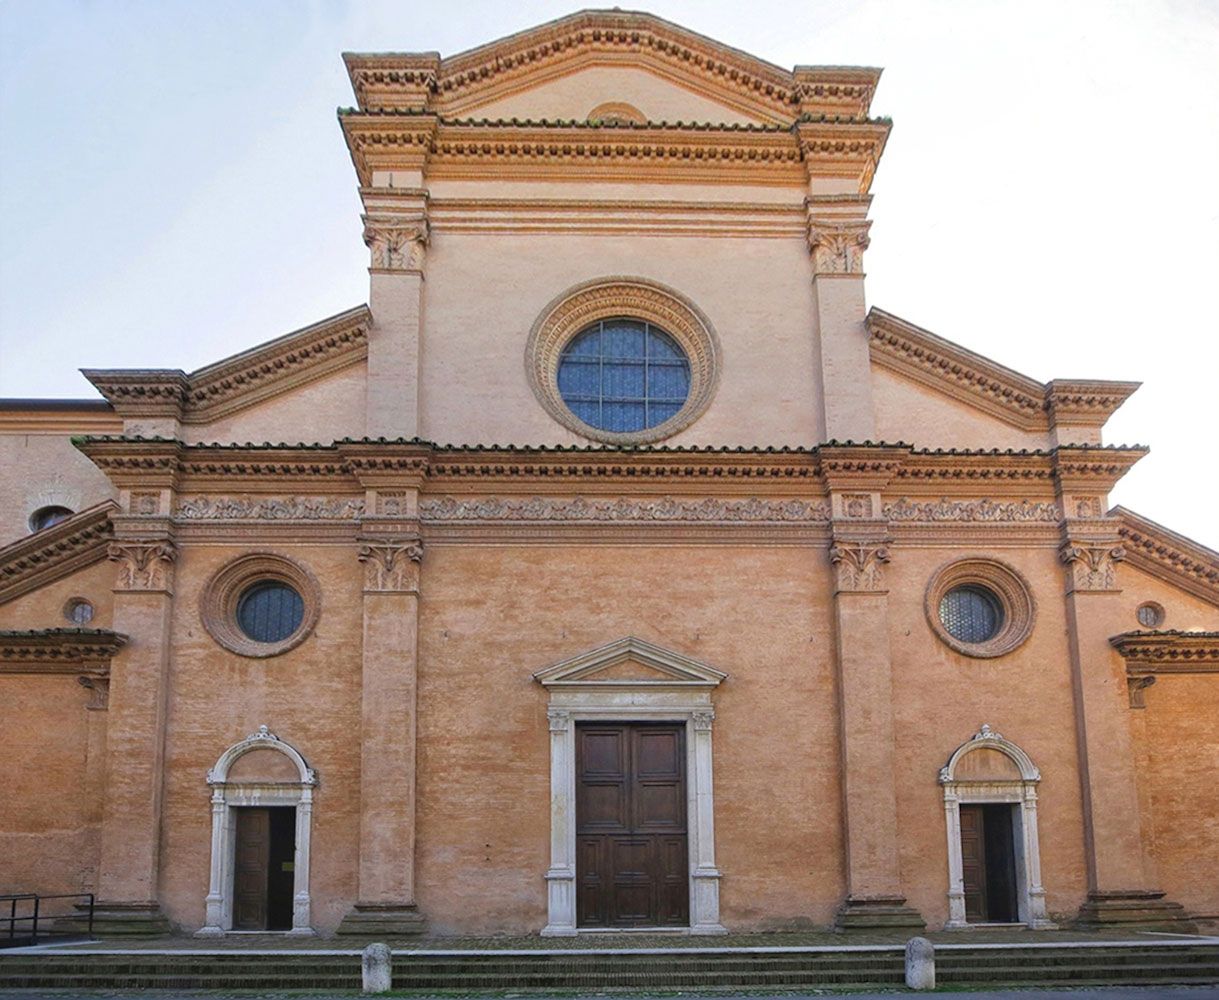 Tour Modena San Pietro